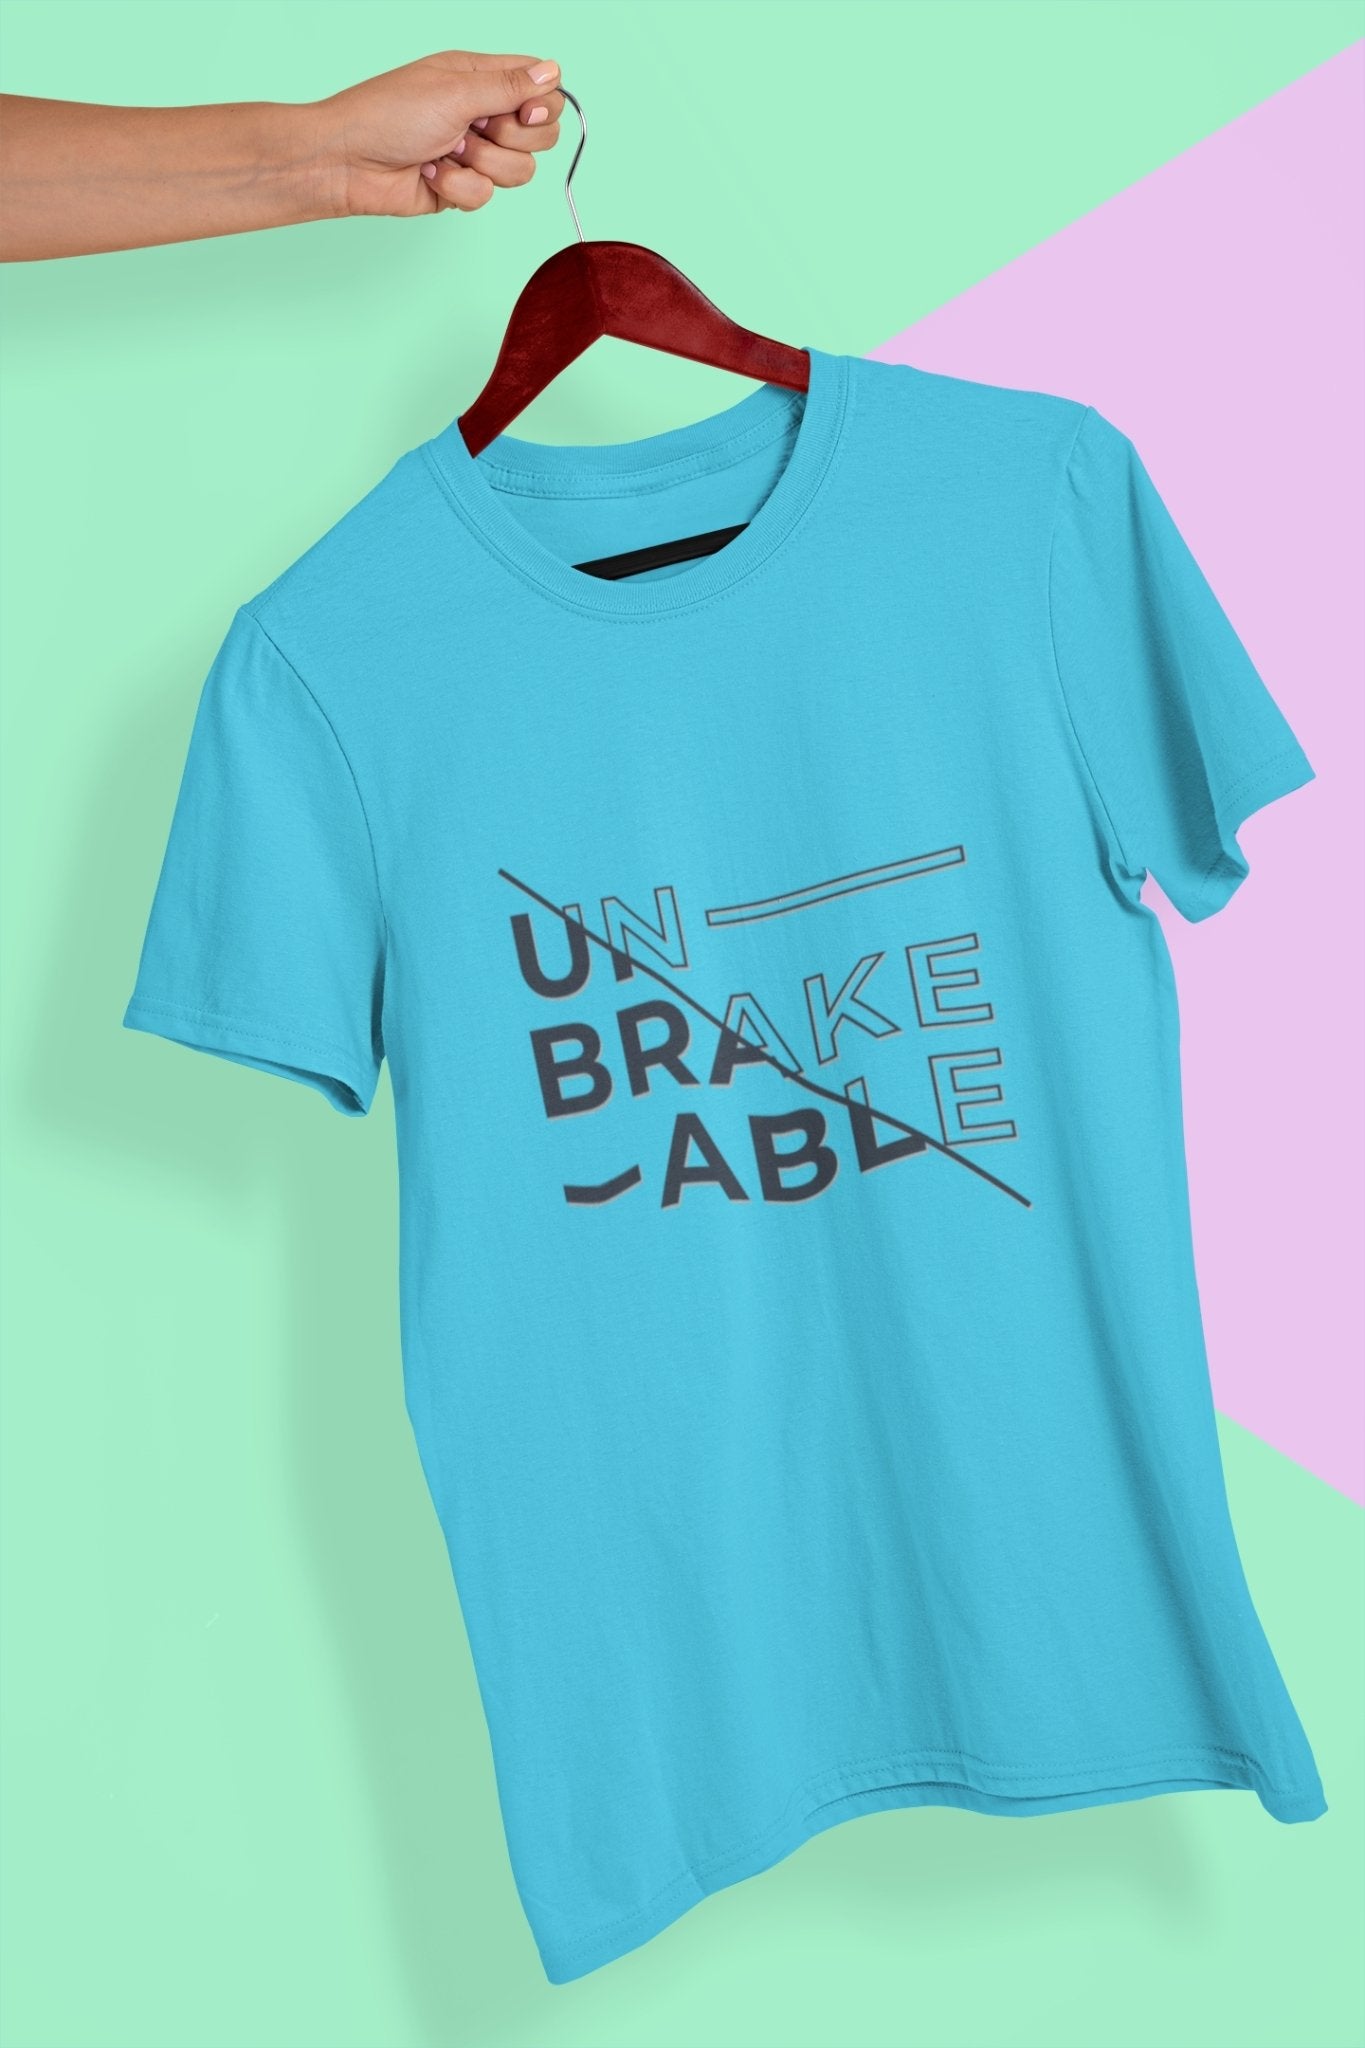 Unbreakable Women Half Sleeves T-shirt- FunkyTeesClub - Funky Tees Club